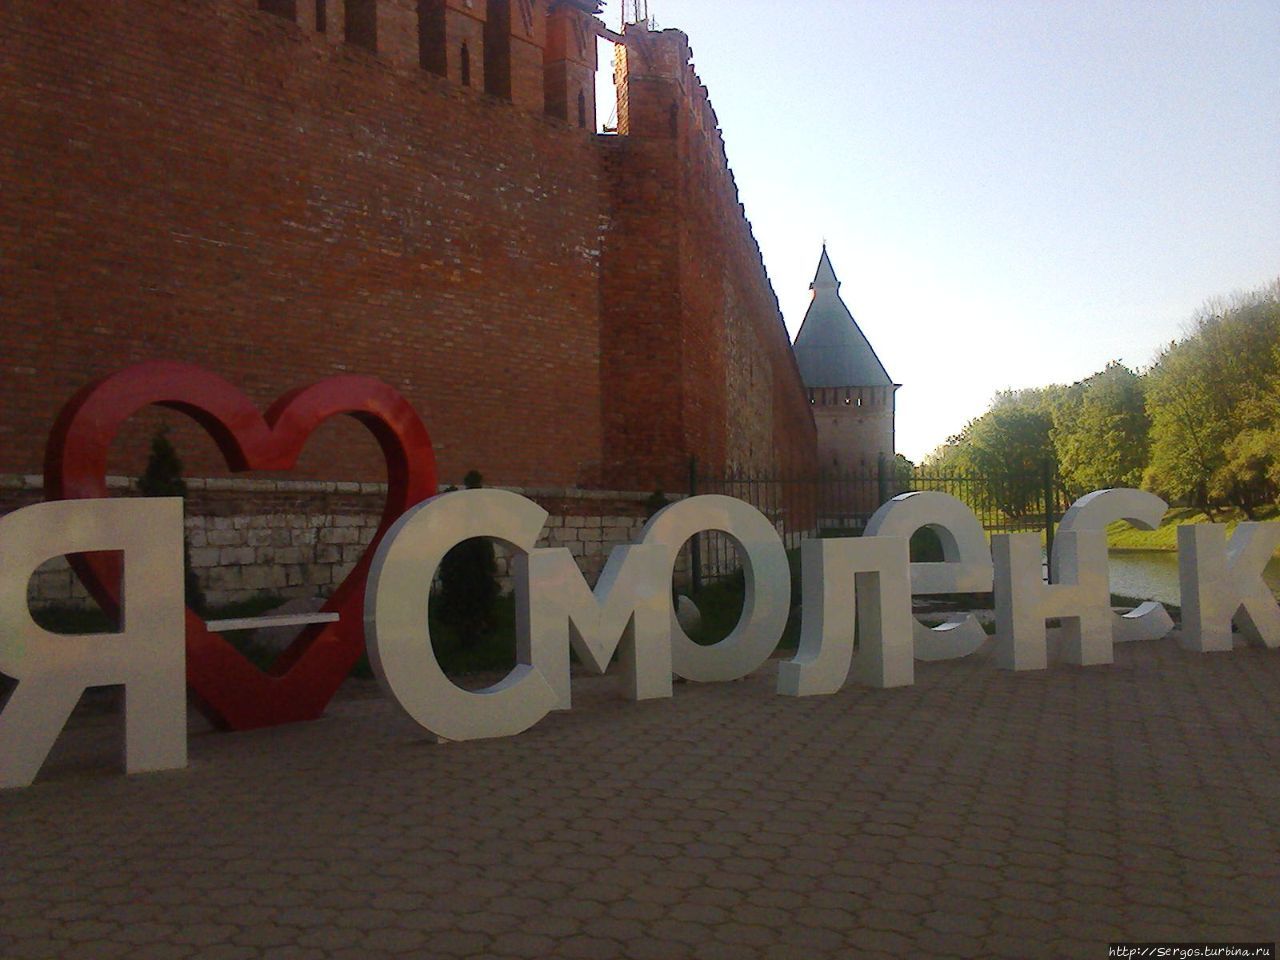 аборигены могут здесь признаться в любви к своему прекрасному городу Смоленск, Россия